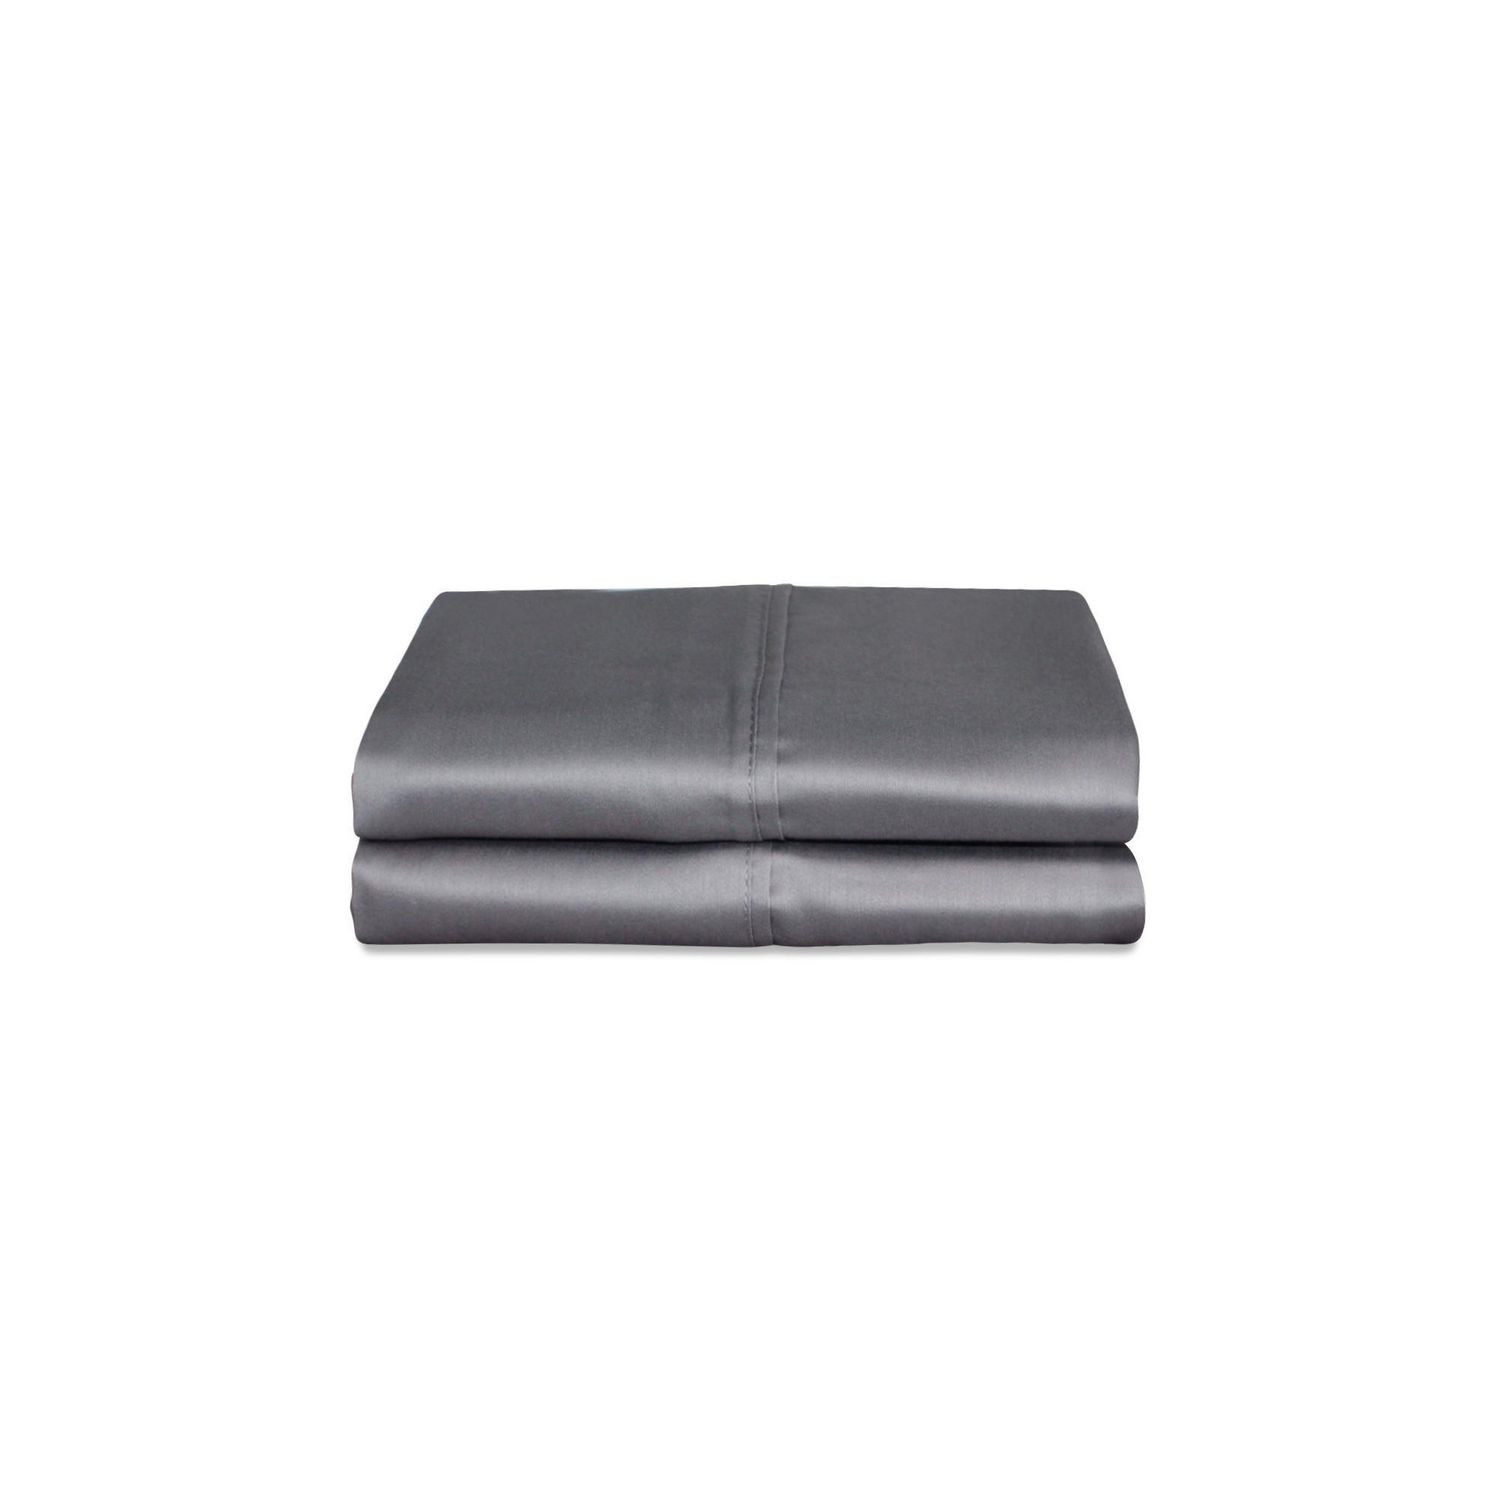 Standard Pillow Case Set: 2pc, 300TC 100% Cotton: (50x75)cm, Cool Grey - T&C